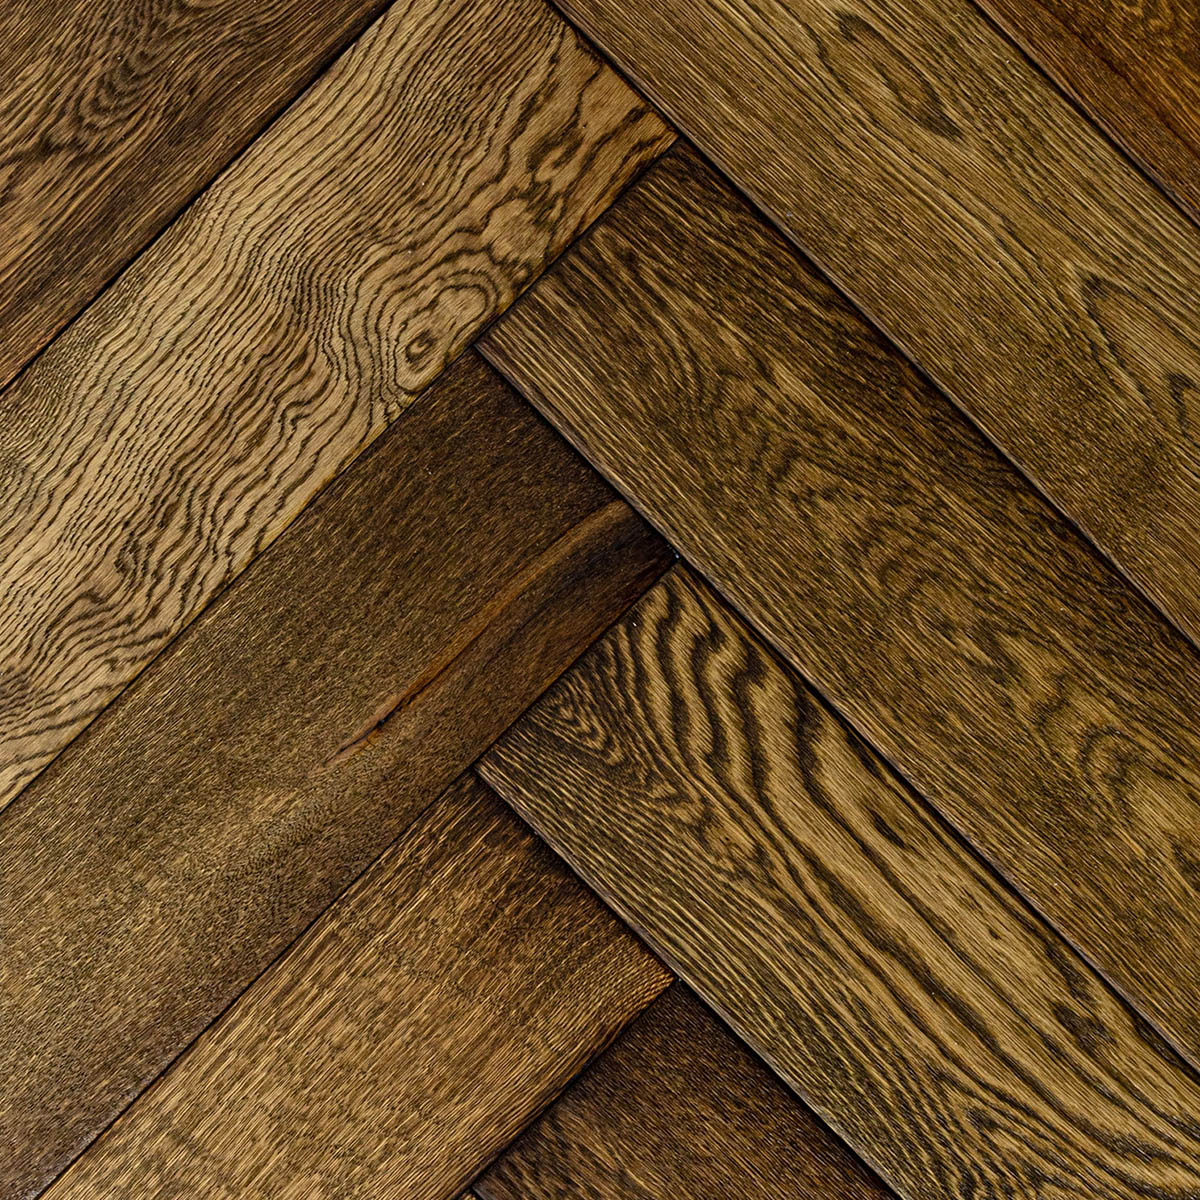 Luxford Herringbone - Distressed European Oak Herringbone Floor